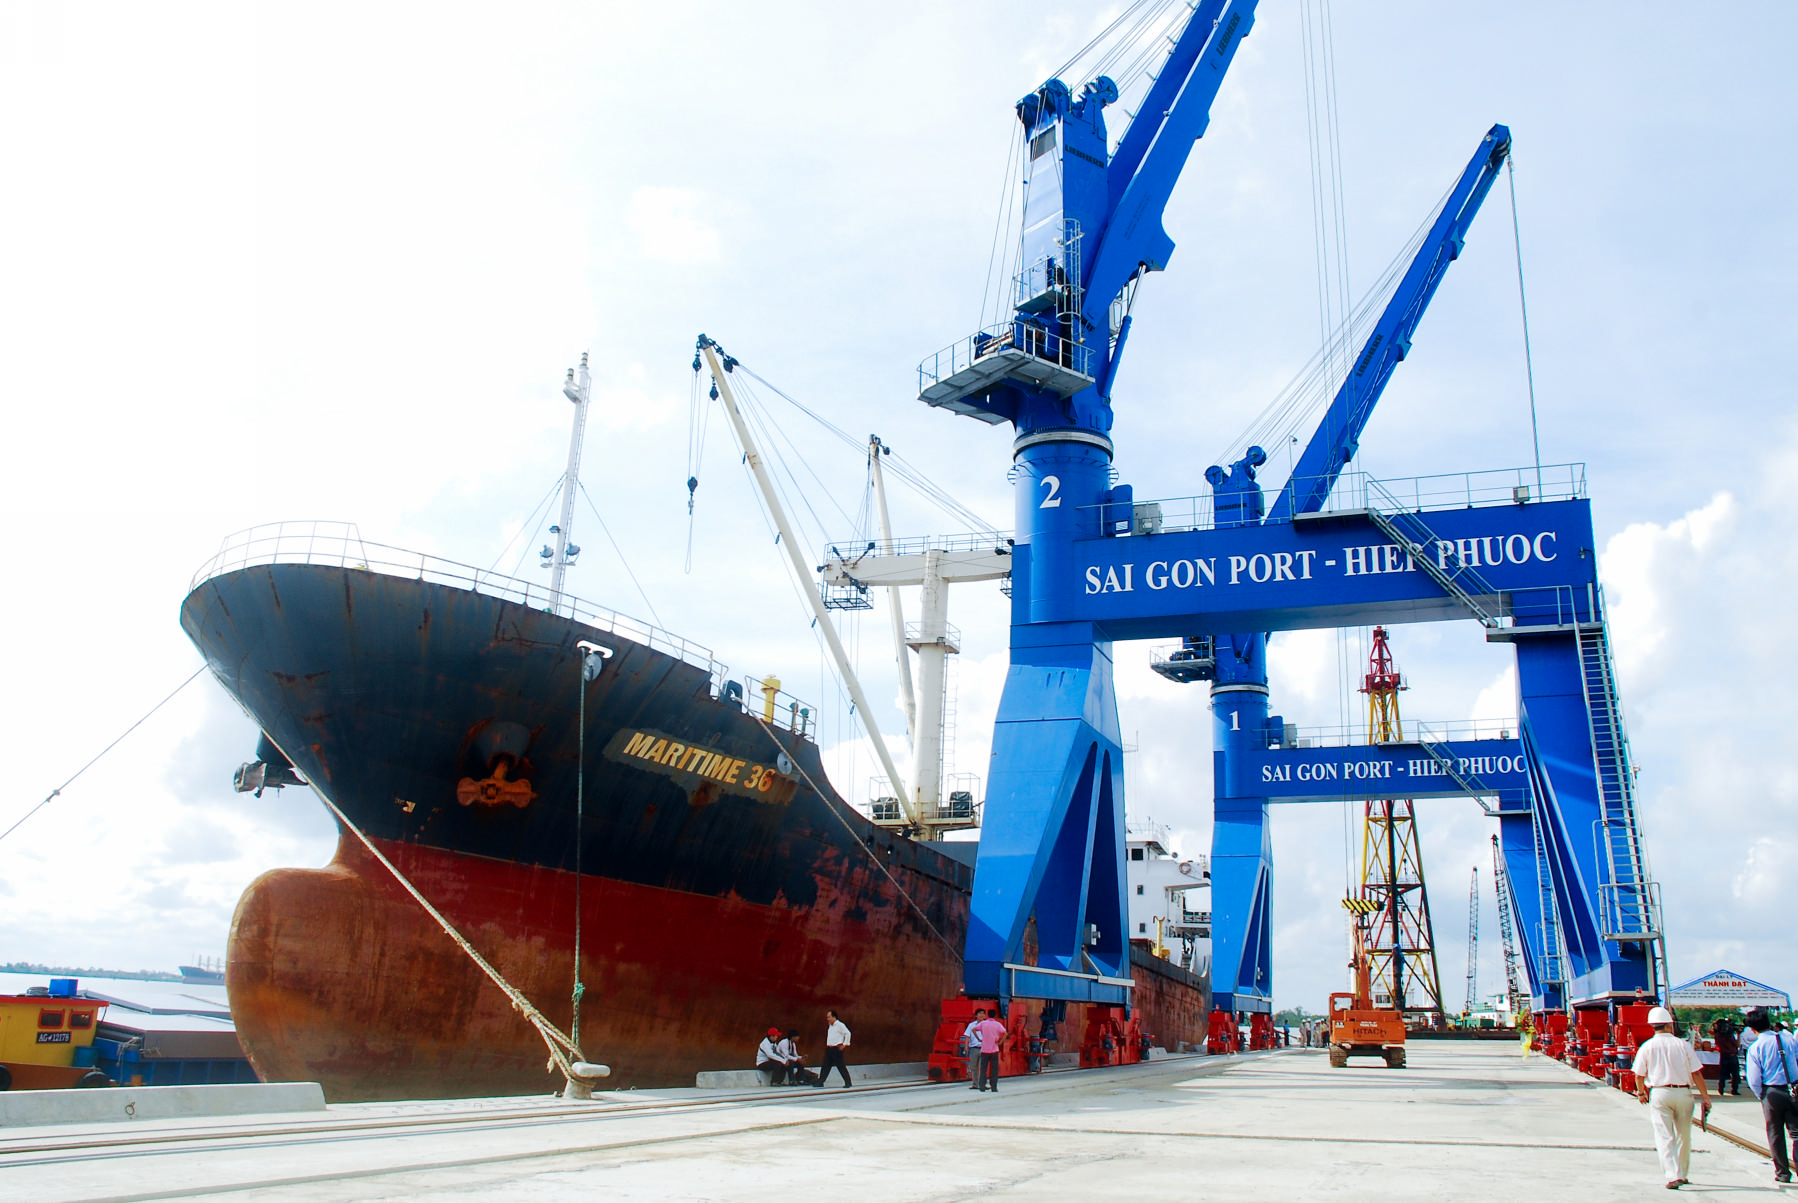 Tập đoàn của tỷ phú Phạm Nhật Vượng chính thức bày tỏ nguyện vọng được mua lại cảng Sài Gòn và cảng Hải Phòng